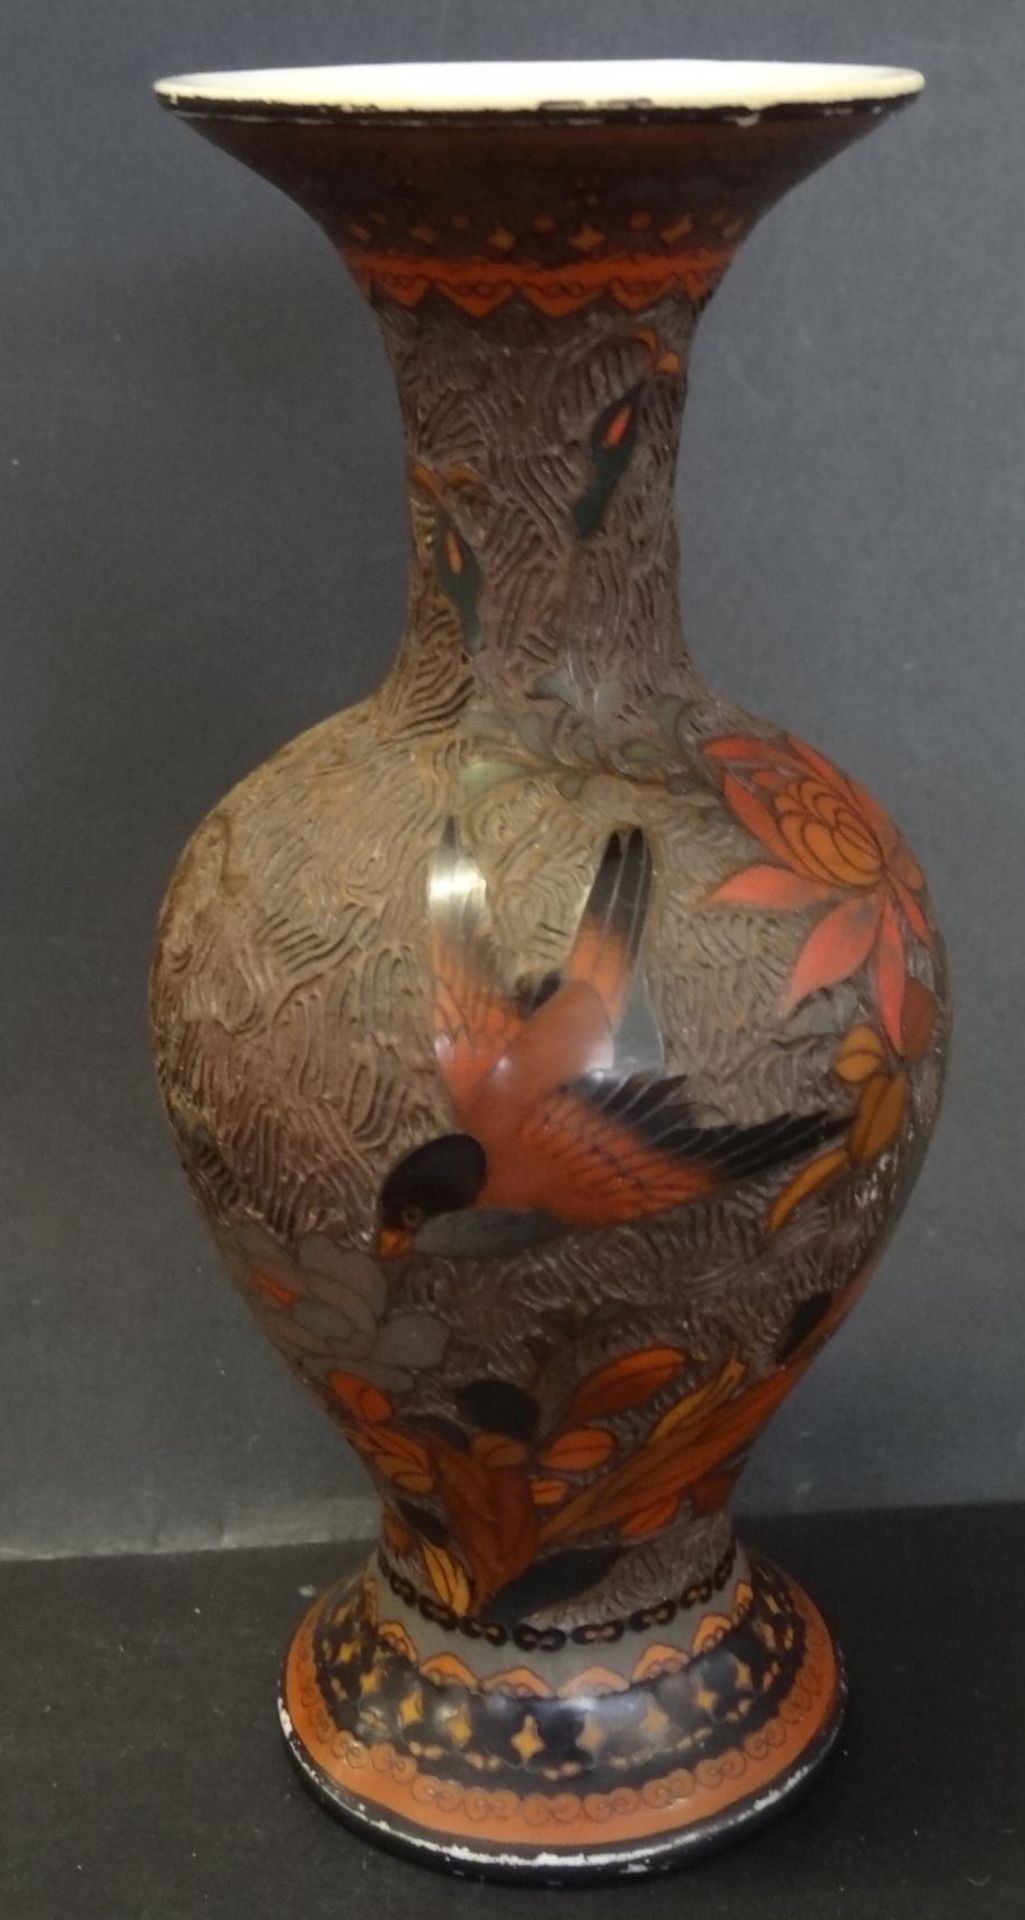 Vase, wohl China?, Porzellan mit Rotlack? geschnitten und bemaltes Dekor, Vögel und Blätter, älter, - Bild 4 aus 6